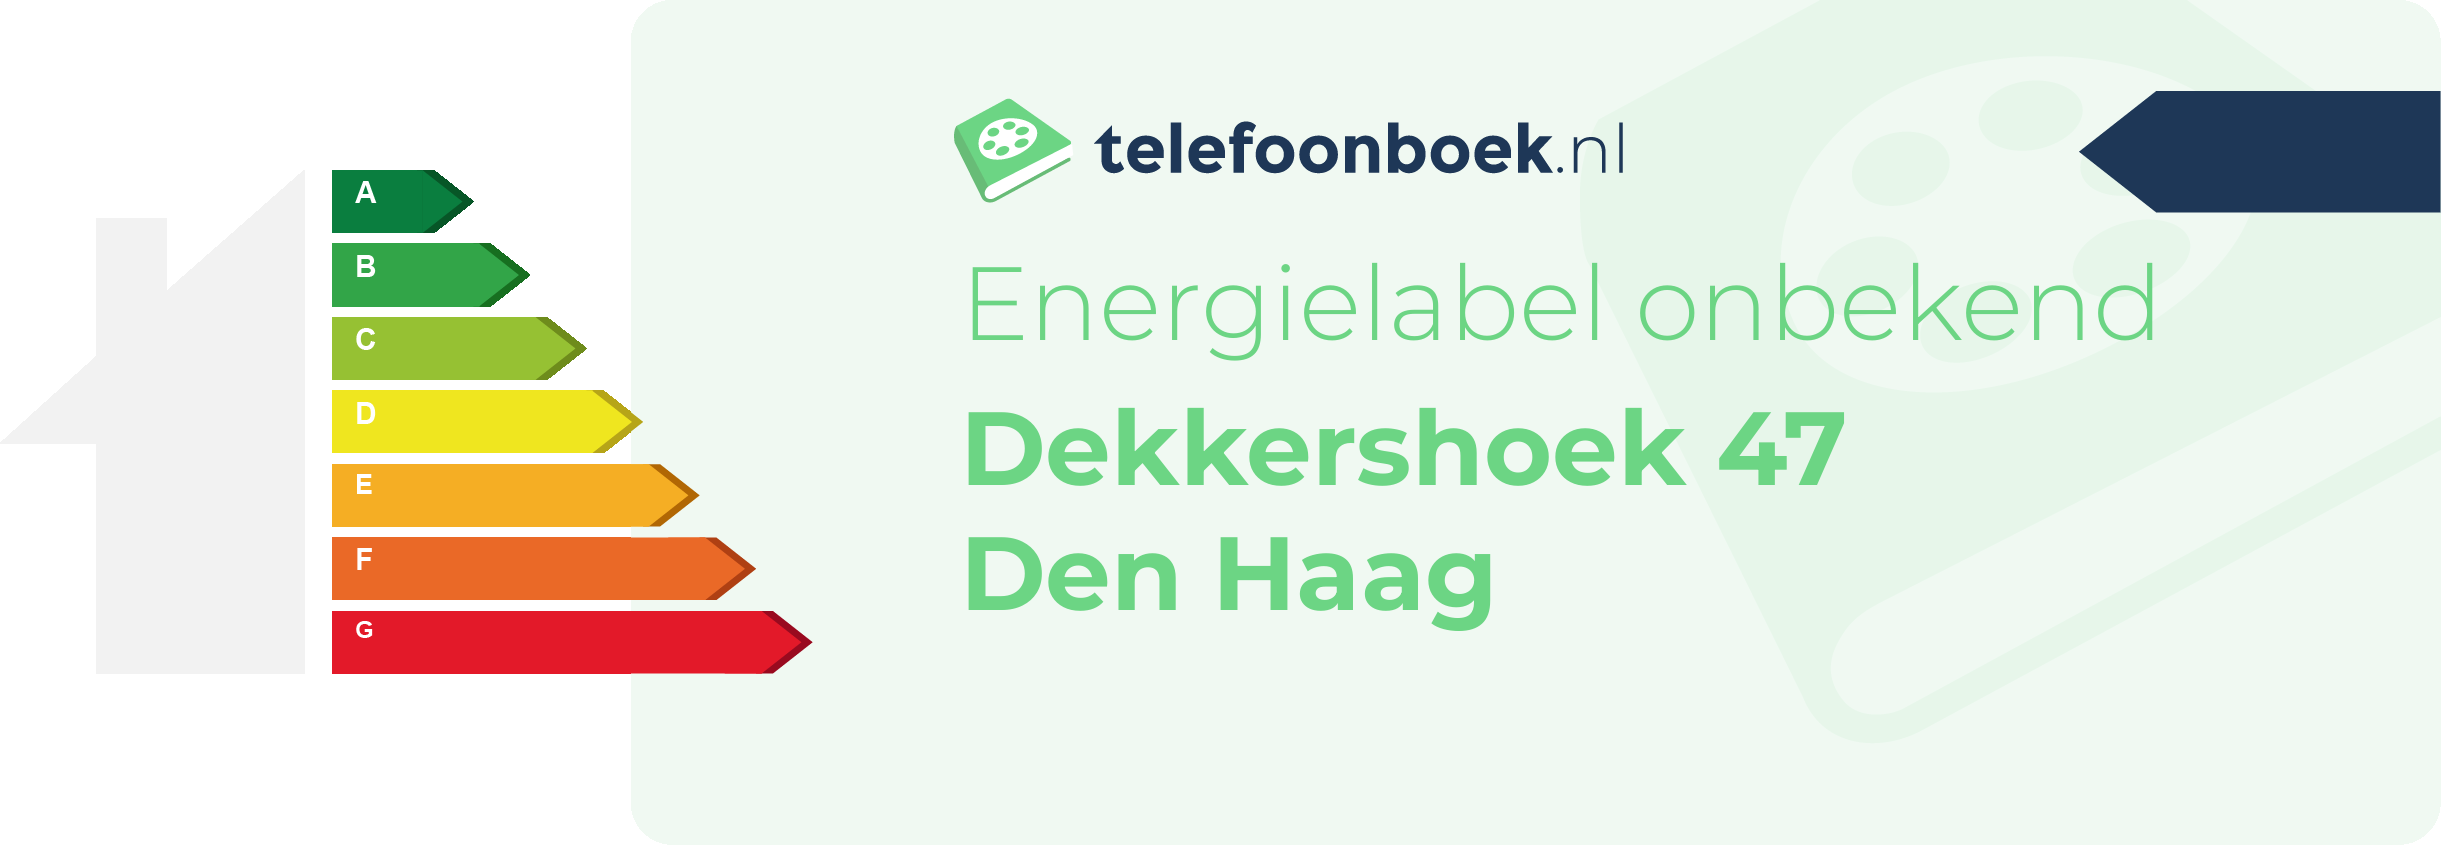 Energielabel Dekkershoek 47 Den Haag